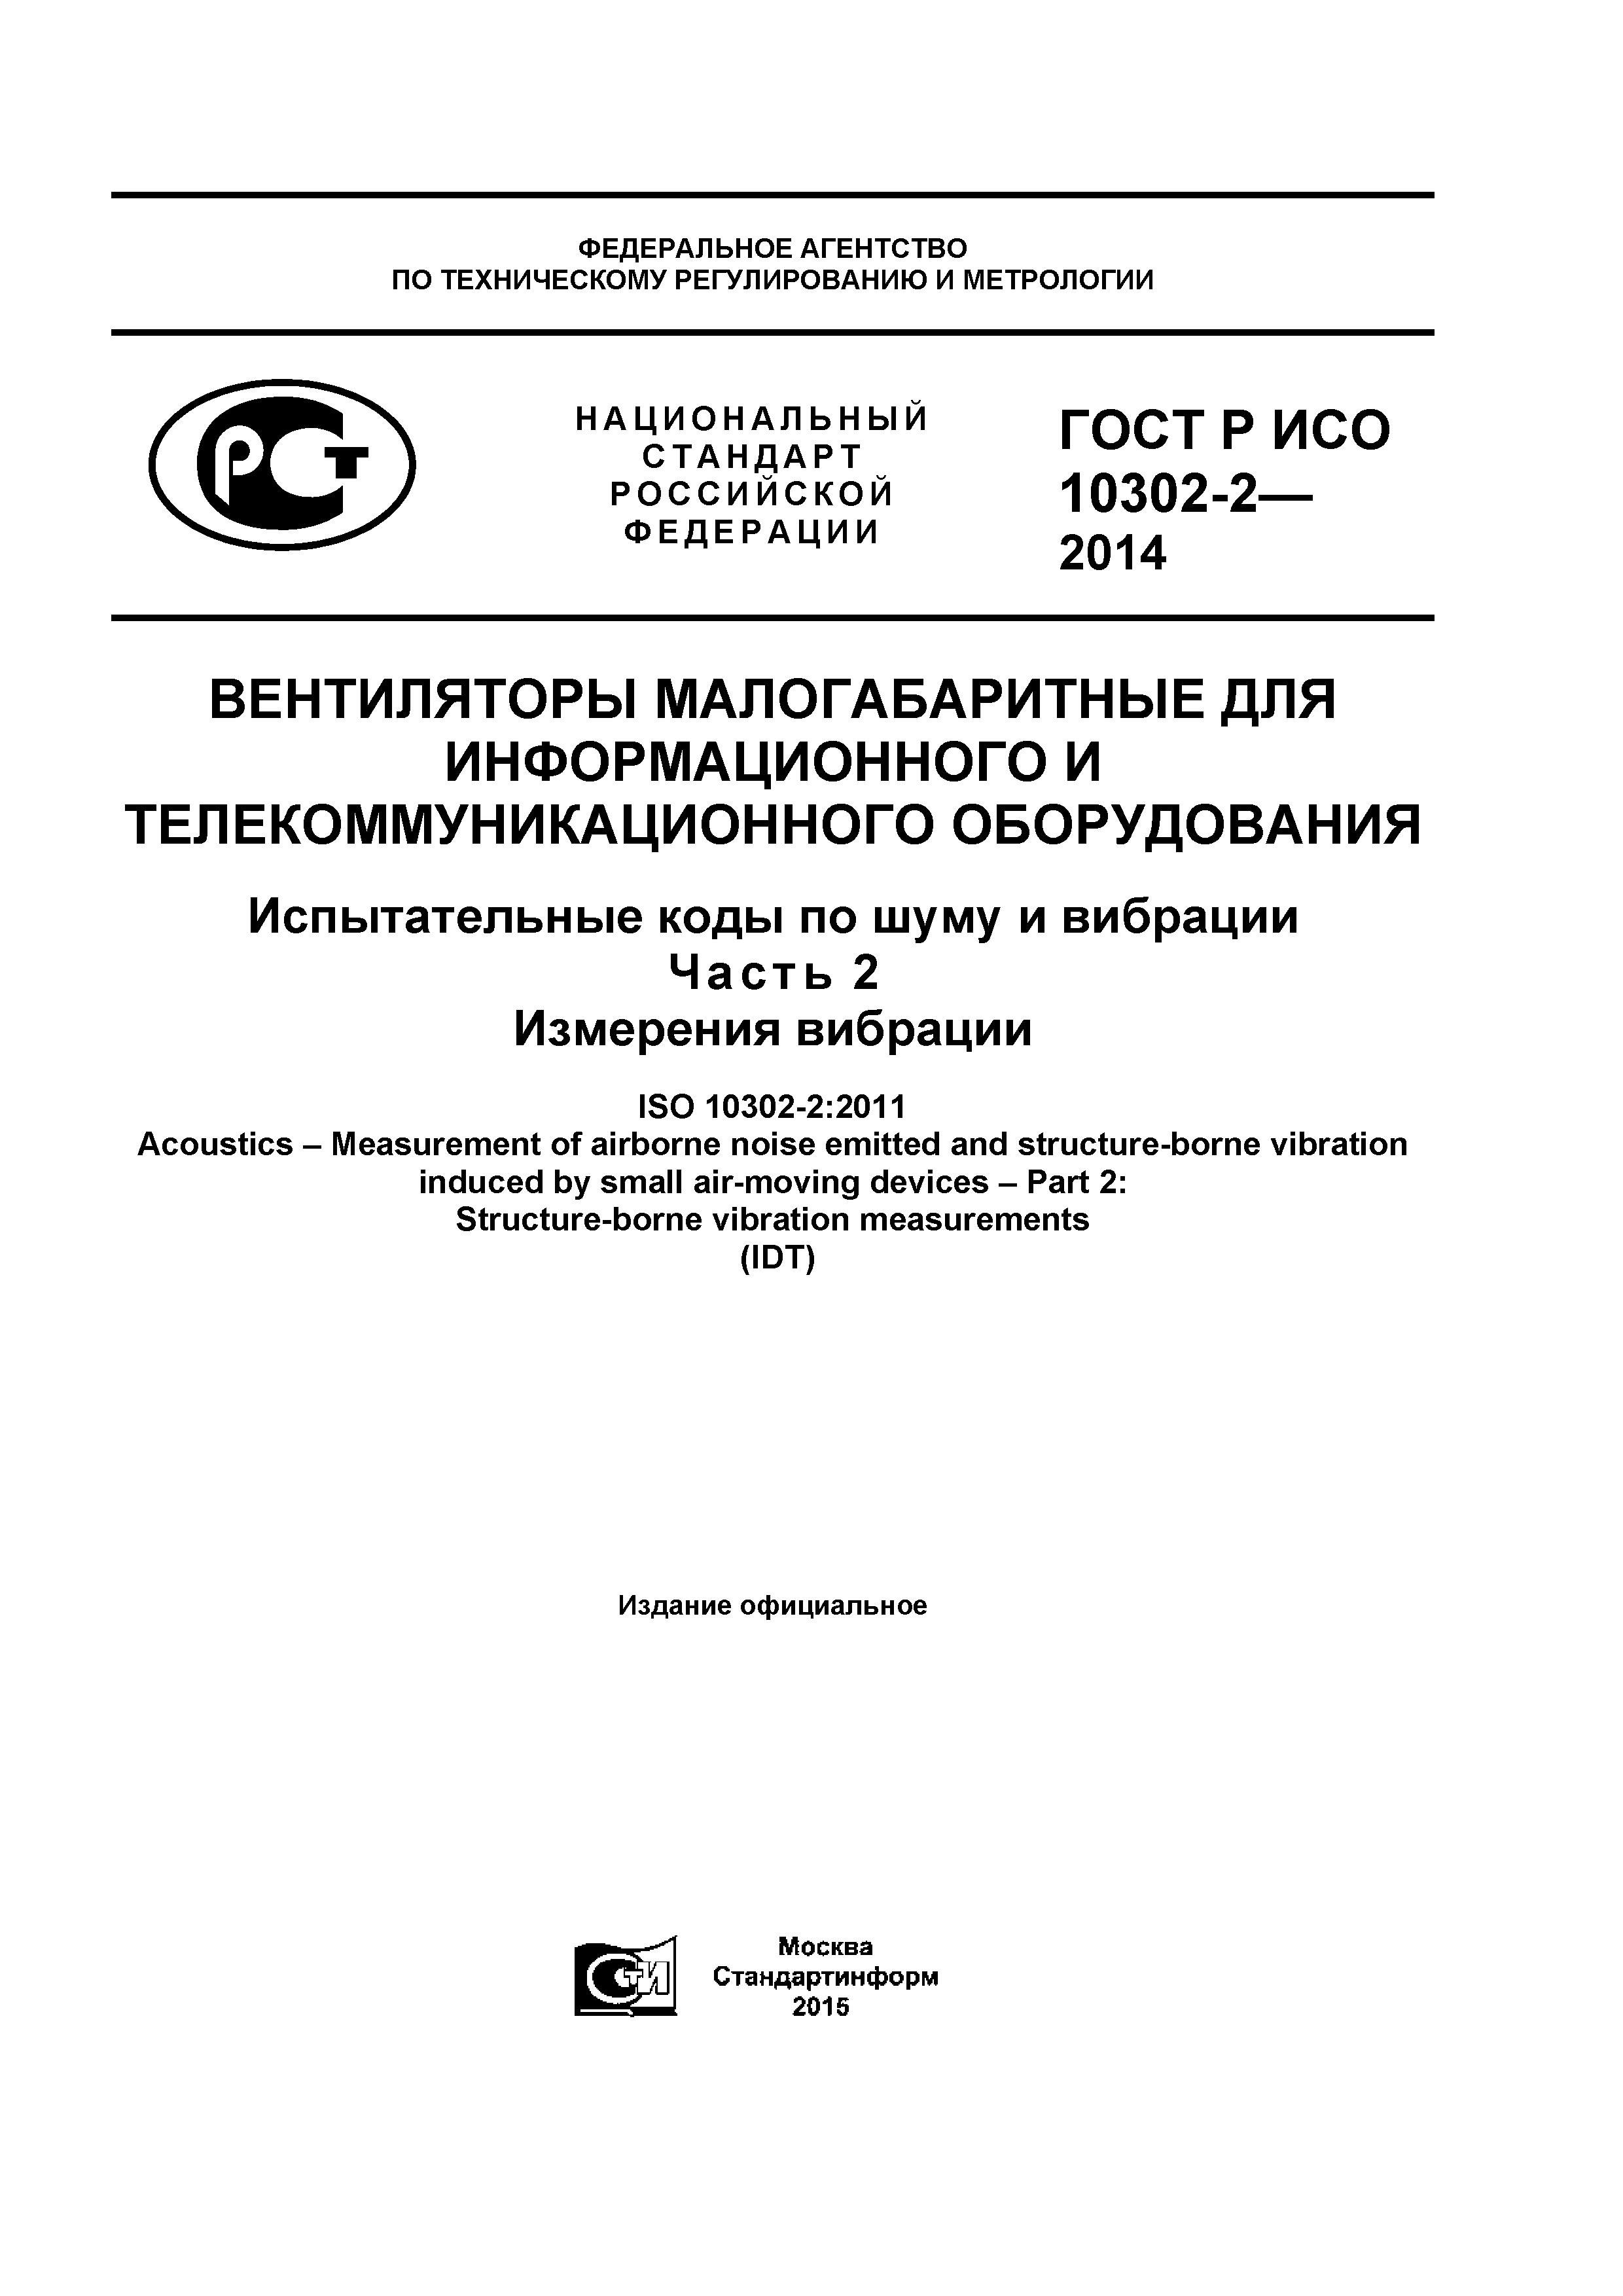 ГОСТ Р ИСО 10302-2-2014